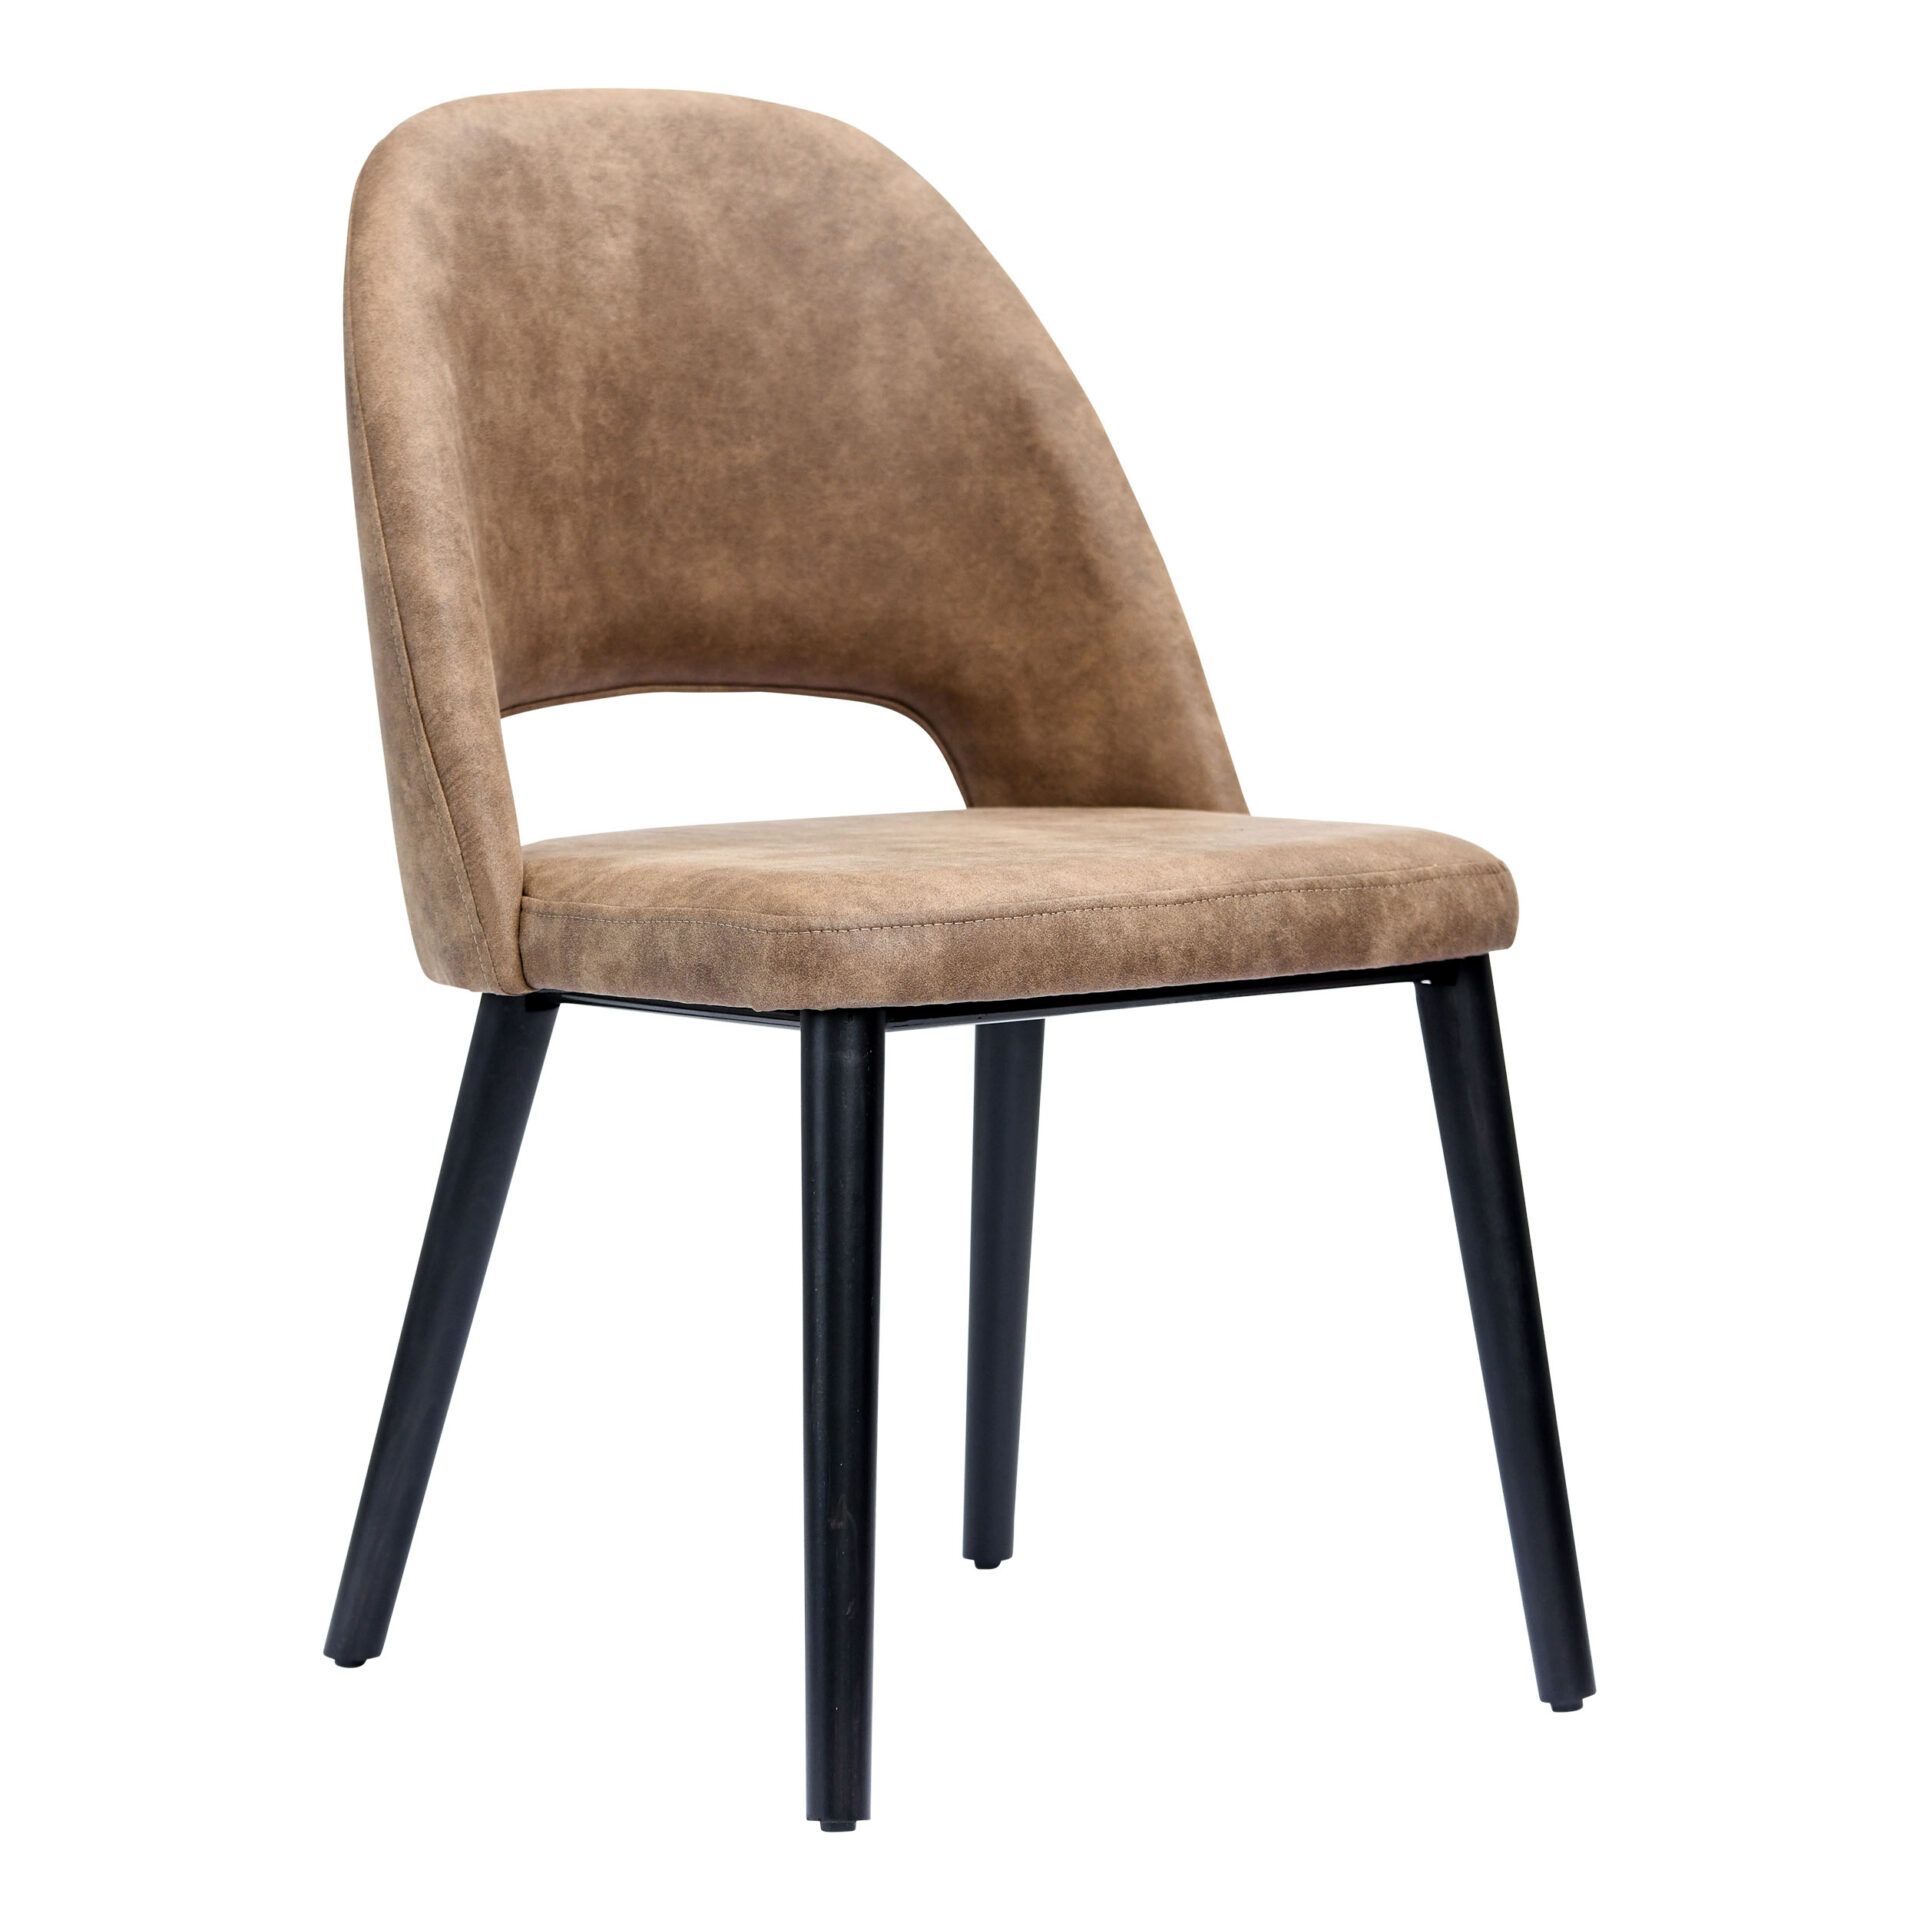 Semifreddo Chair - Black Legs/Mocha Fabric